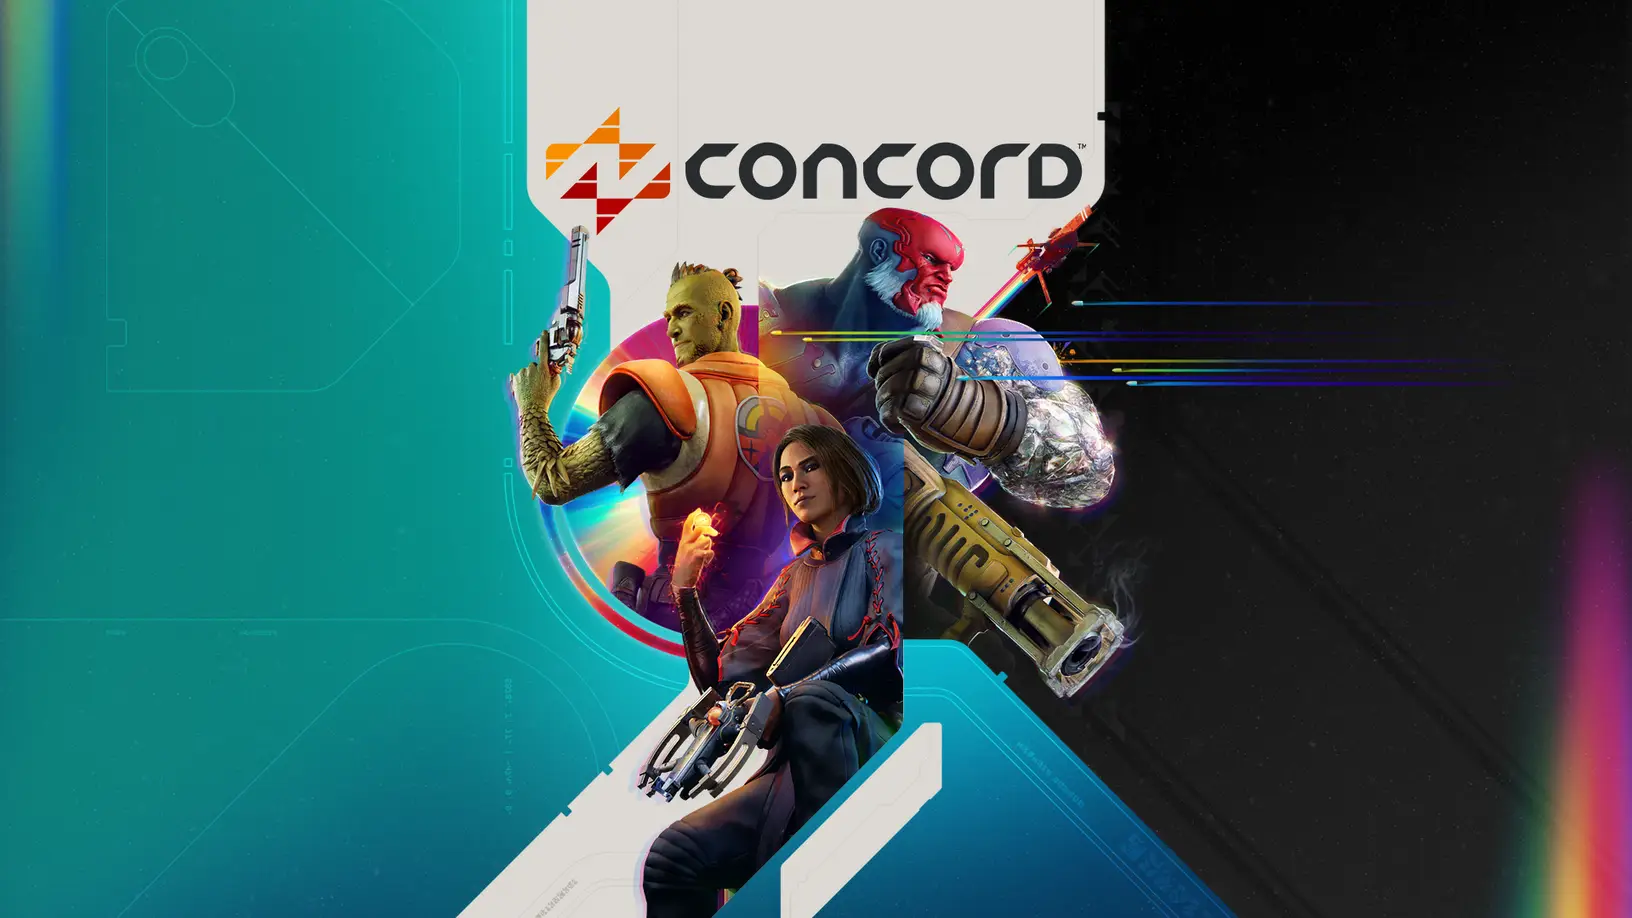 Firewalk Studios опублікувала системні вимоги для бета-версії шутера Concord: сподіваємося, що до релізу в грі з'явиться оптимізація